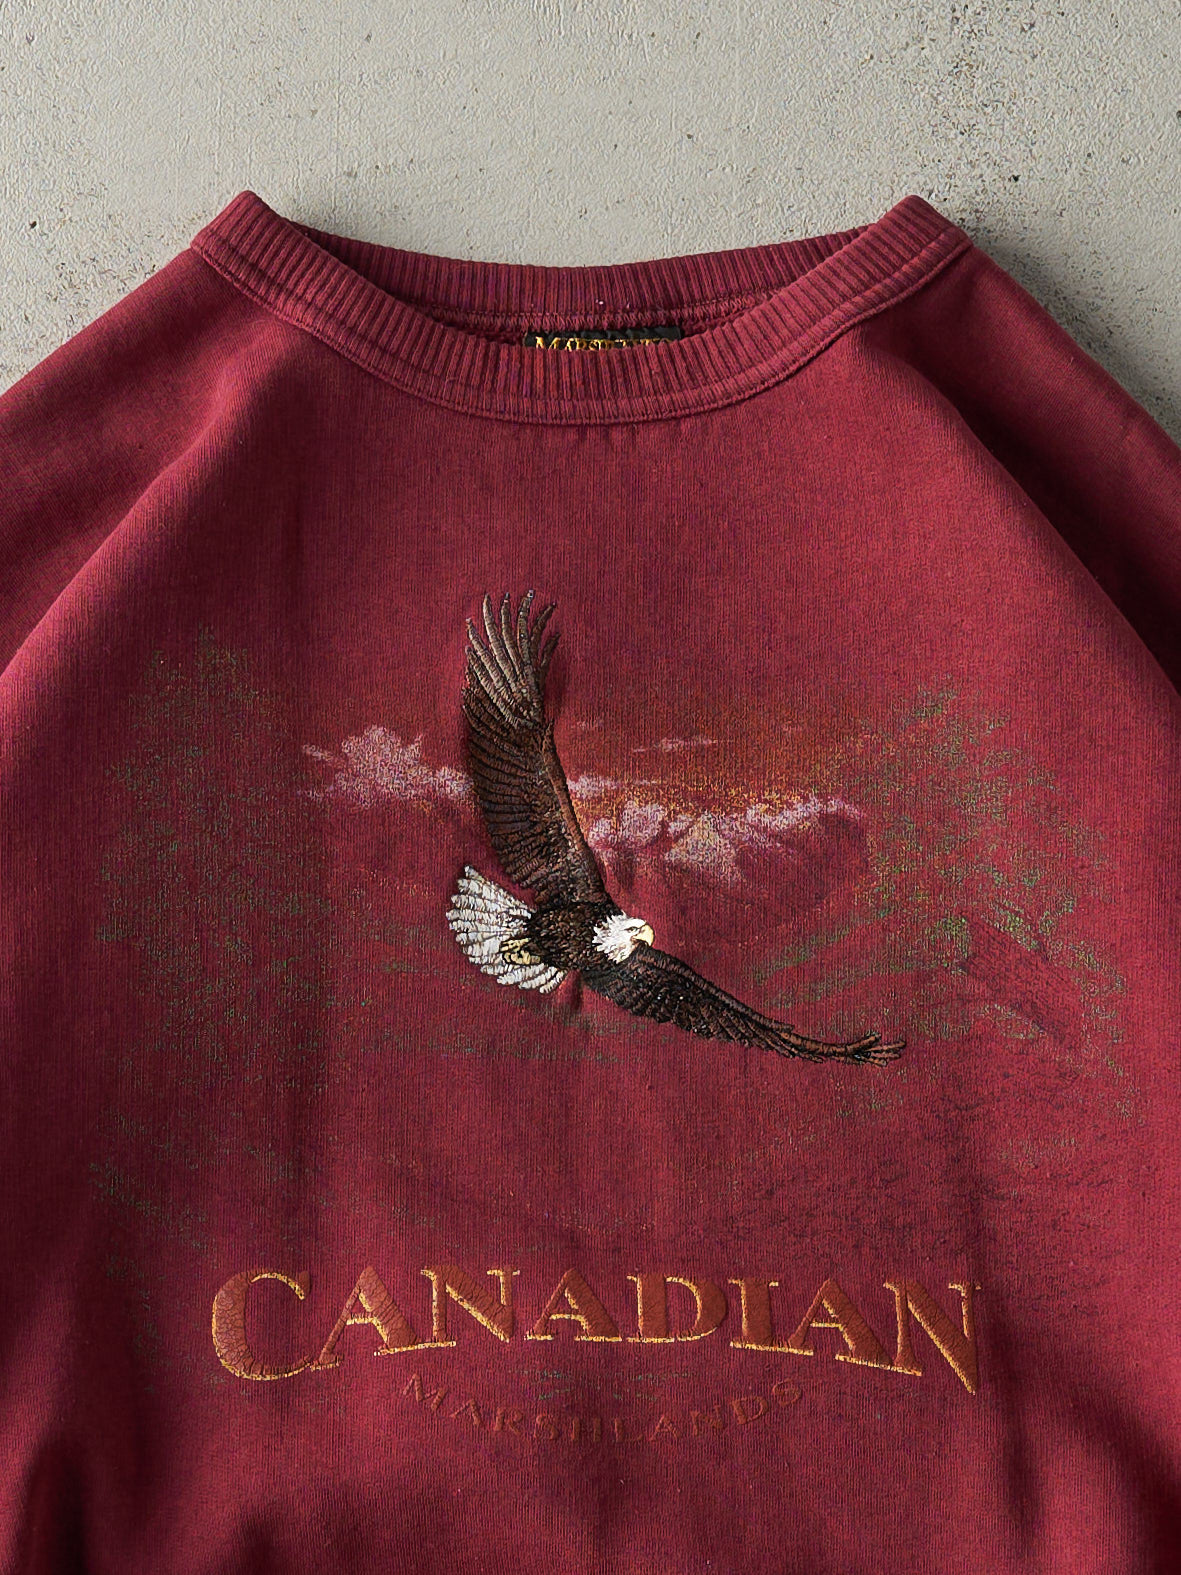 Vintage 90s Burgundy Embroidered Canadian Marshlands Crewneck (M/L)